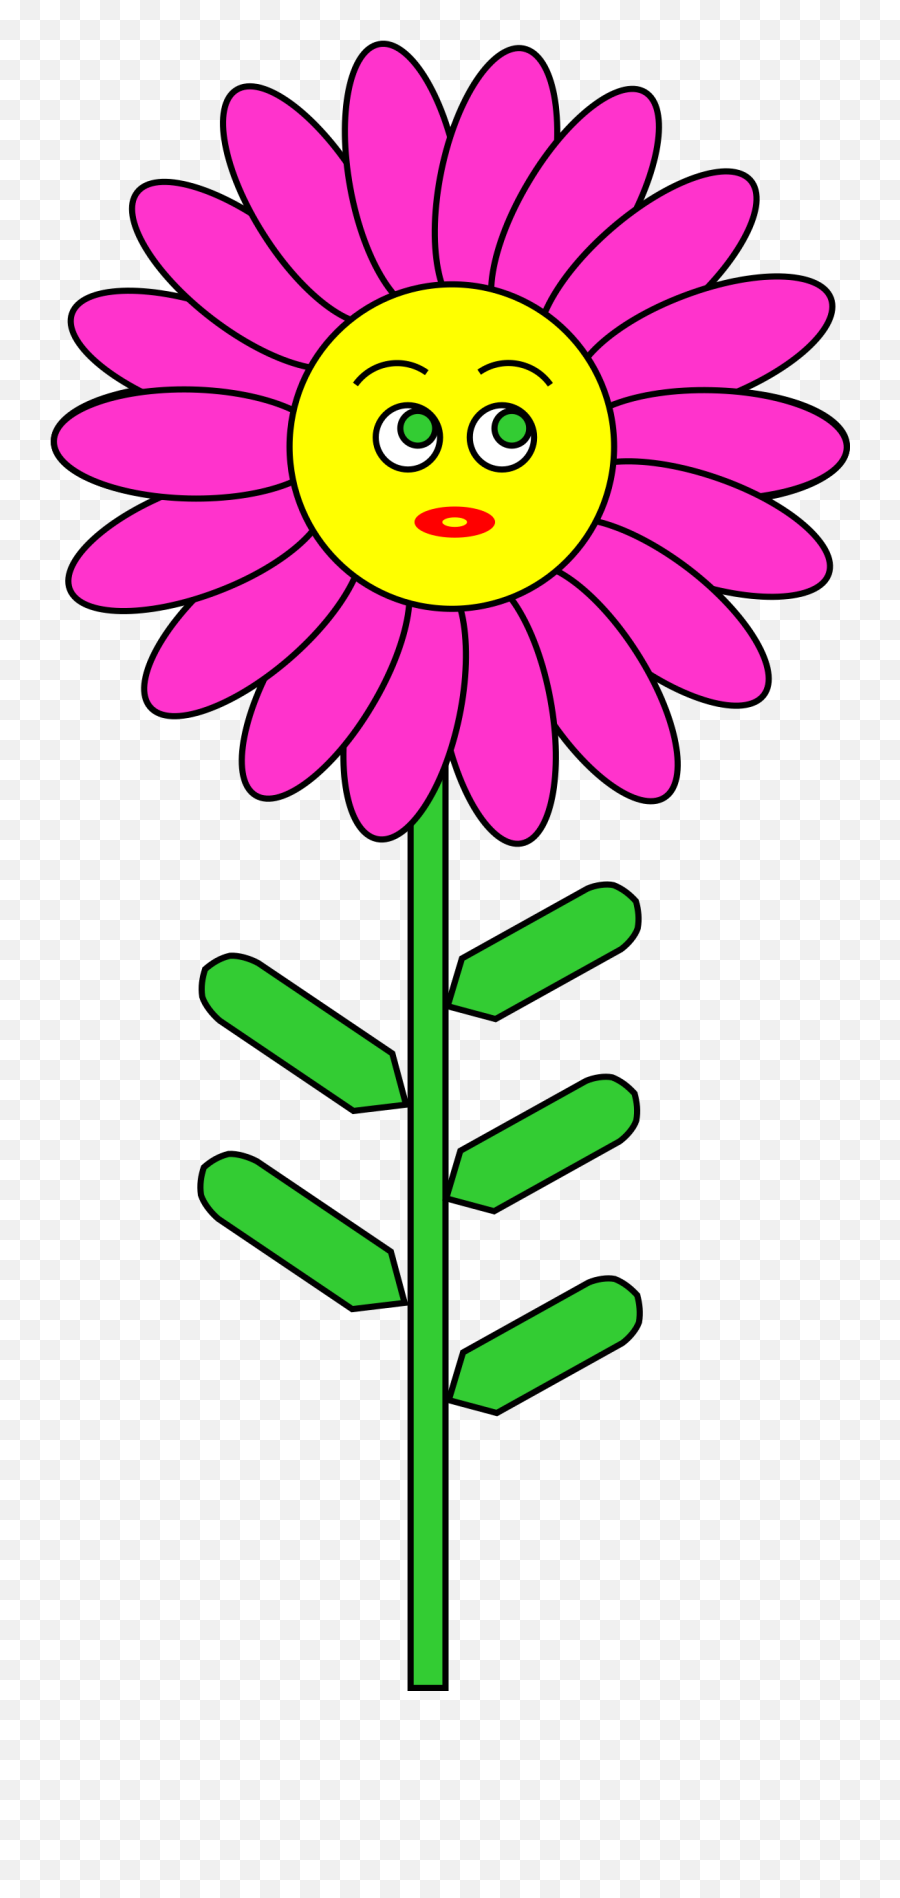 Clipart Smile Flower Clipart Smile - Flower Png Clipart Smile Emoji,Smiling Flower Emoji